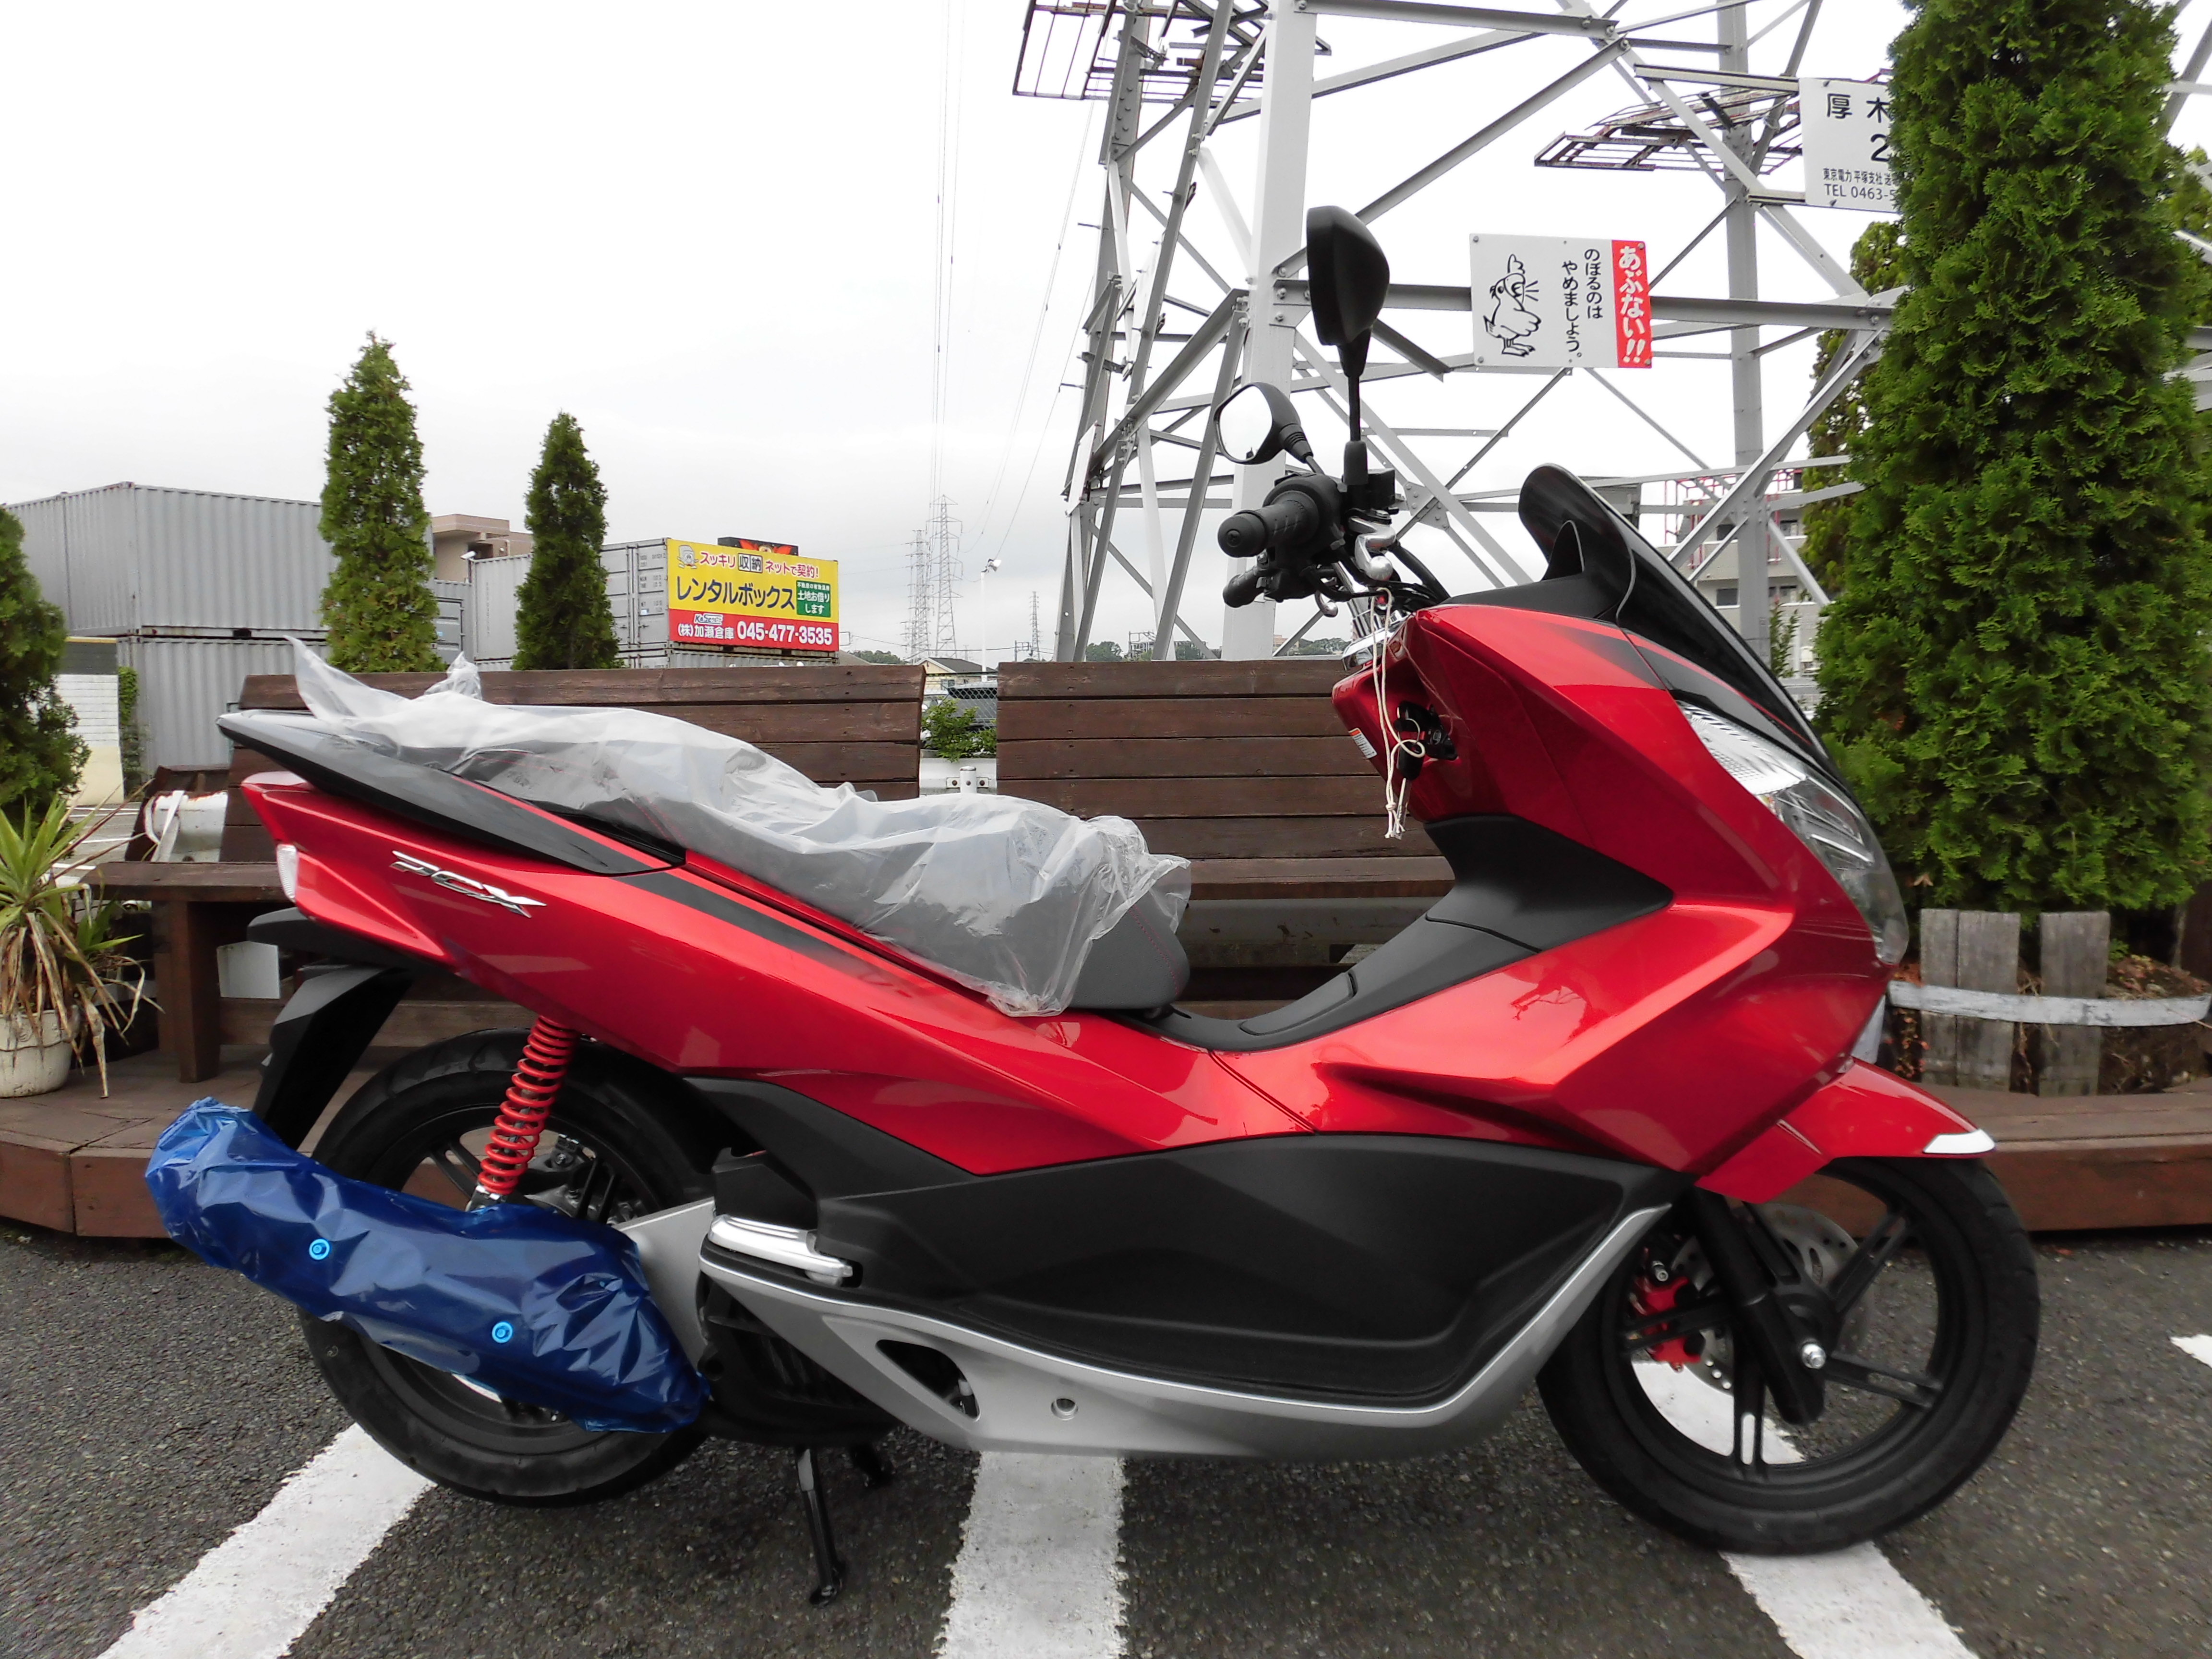 旧型pcxﾂｰﾄﾝまだ新車あります 最新情報 U Media ユーメディア 中古バイク 新車バイク探しの決定版 神奈川 東京でバイク探すならユーメディア